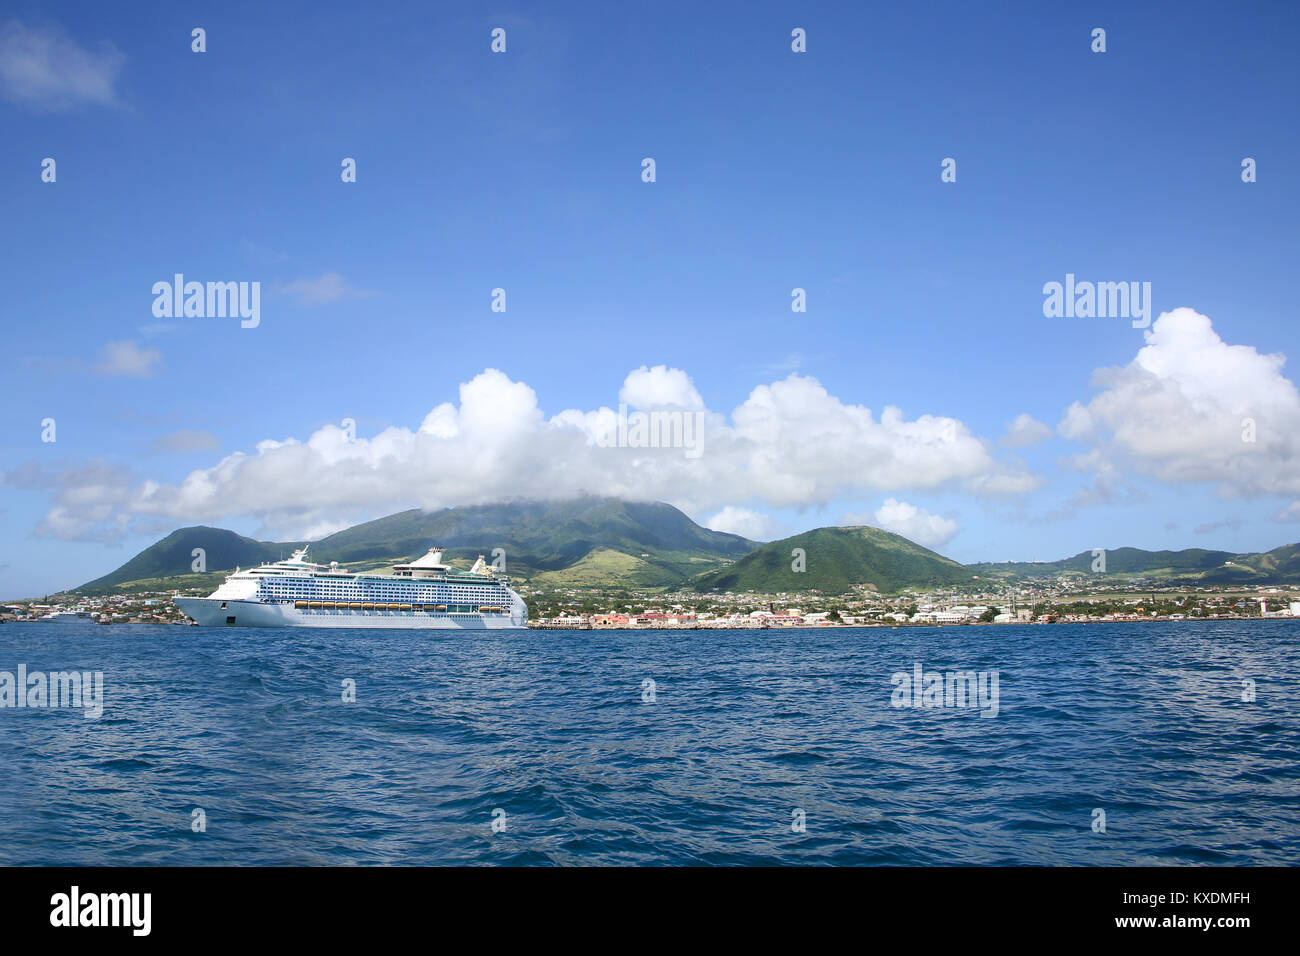 L'île de St Kitts, avec beau paysage et un navire de croisière ancré au large des côtes, Basseterre, Saint Kitts, des Caraïbes. Banque D'Images